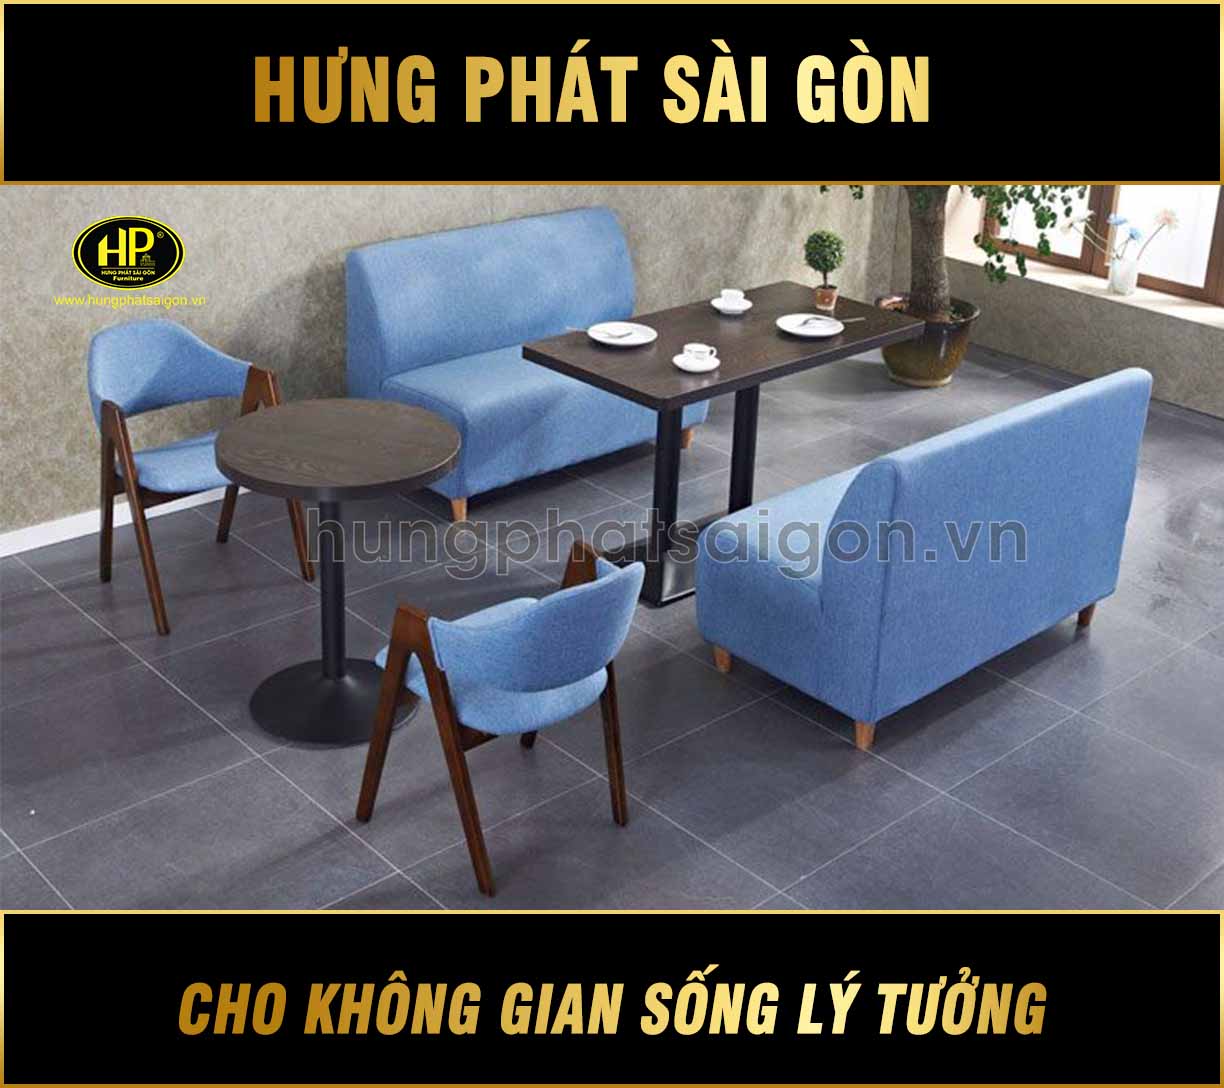 Ghế sofa cafe SC-07 - Hưng Phát Sài Gòn